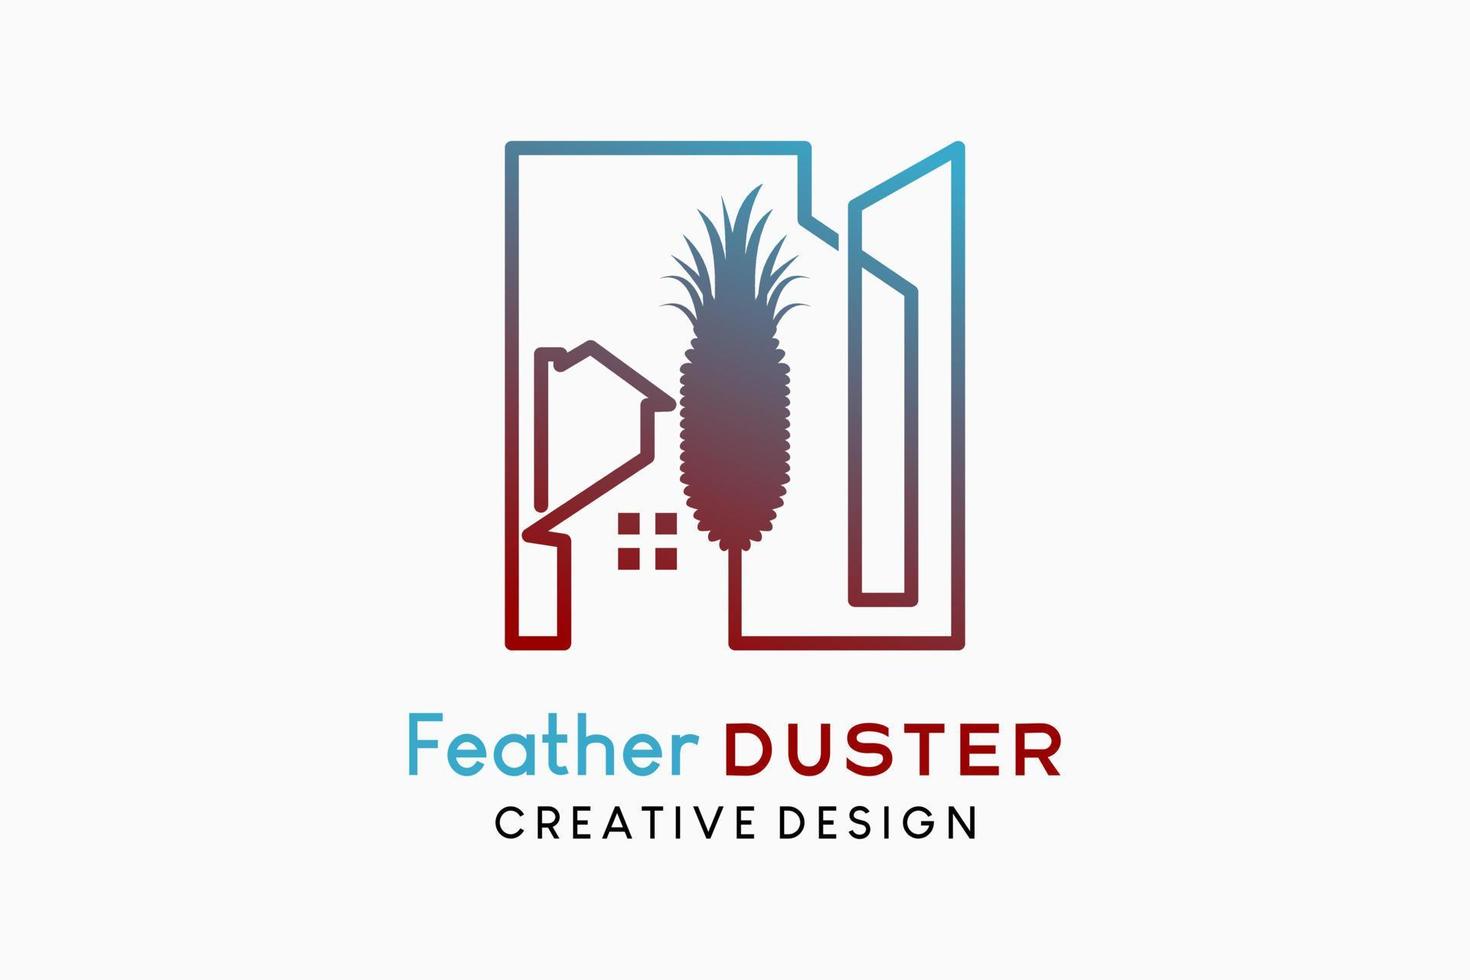 diseño de logotipo de plumero de pluma ilustración de limpiador de polvo tradicional, silueta de un plumero de pluma combinado con iconos de casa y construcción en el arte lineal vector